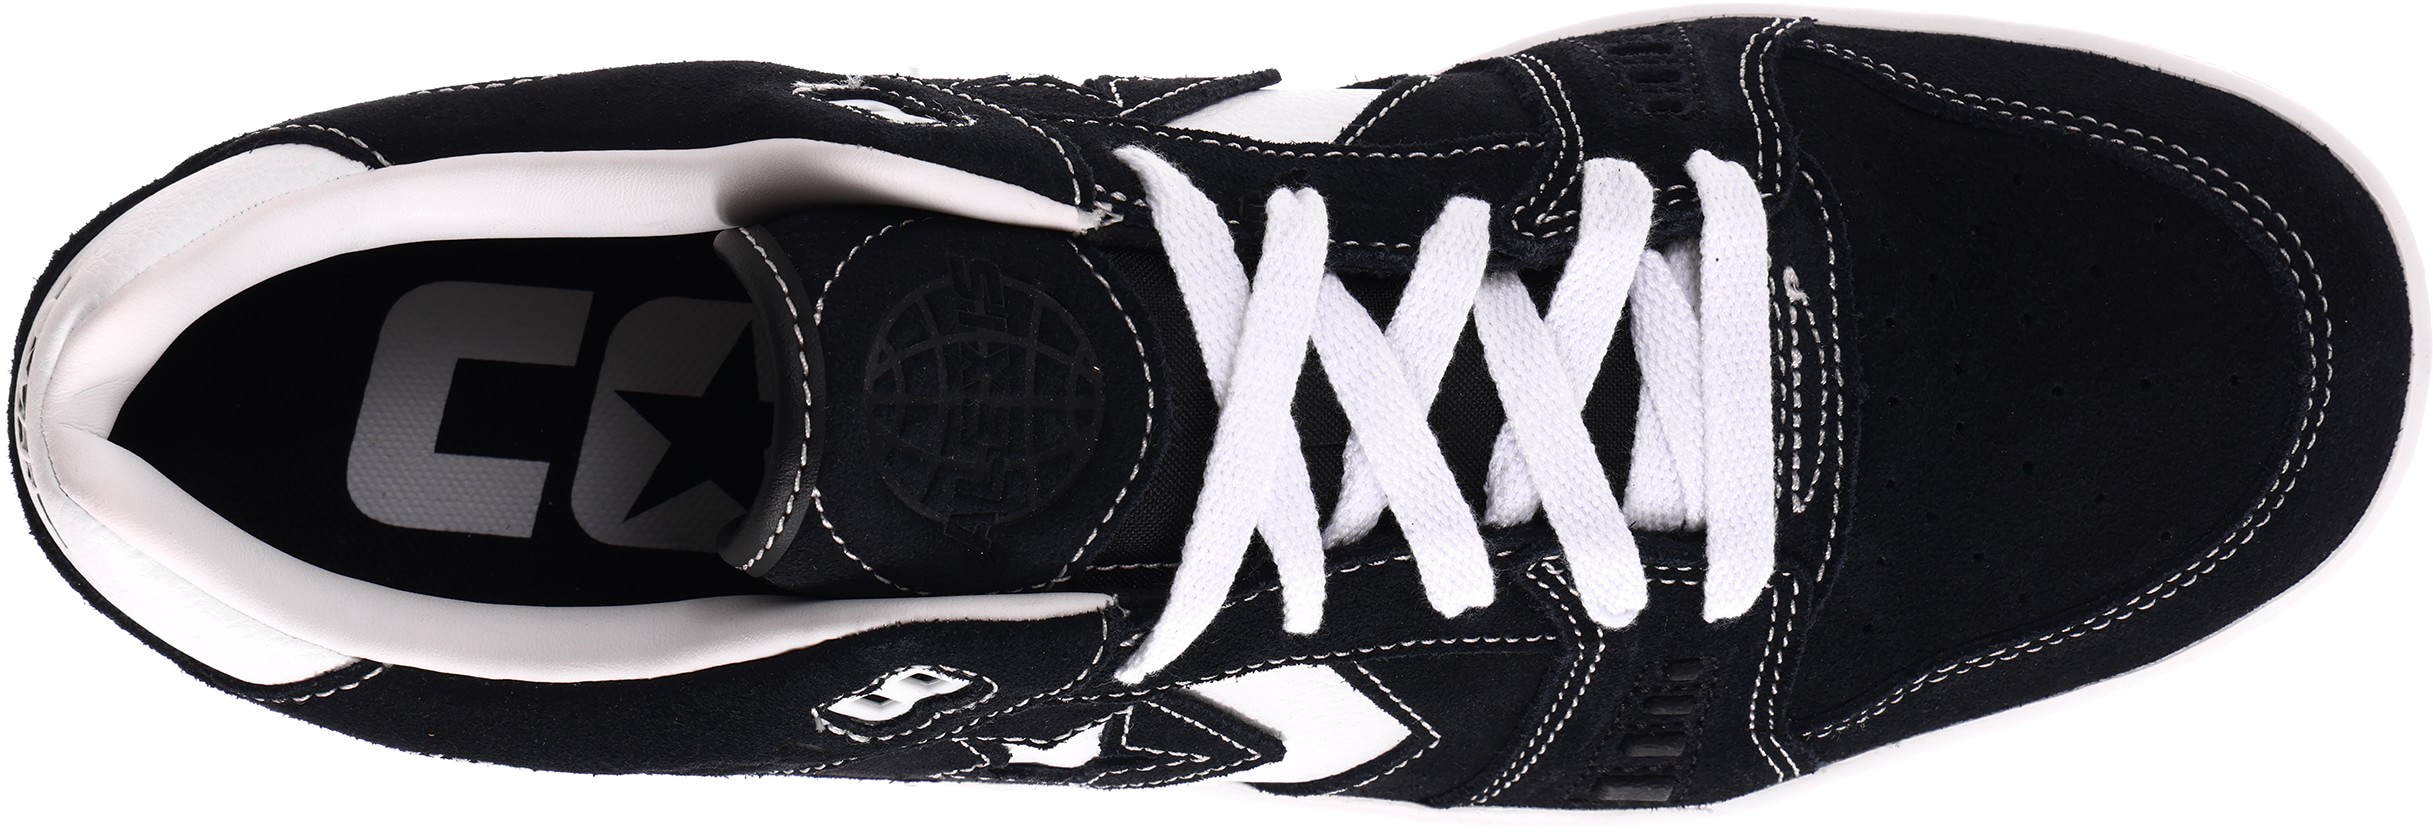 Converse AS-1 Pro Skate Shoes - black/white/gum | Tactics